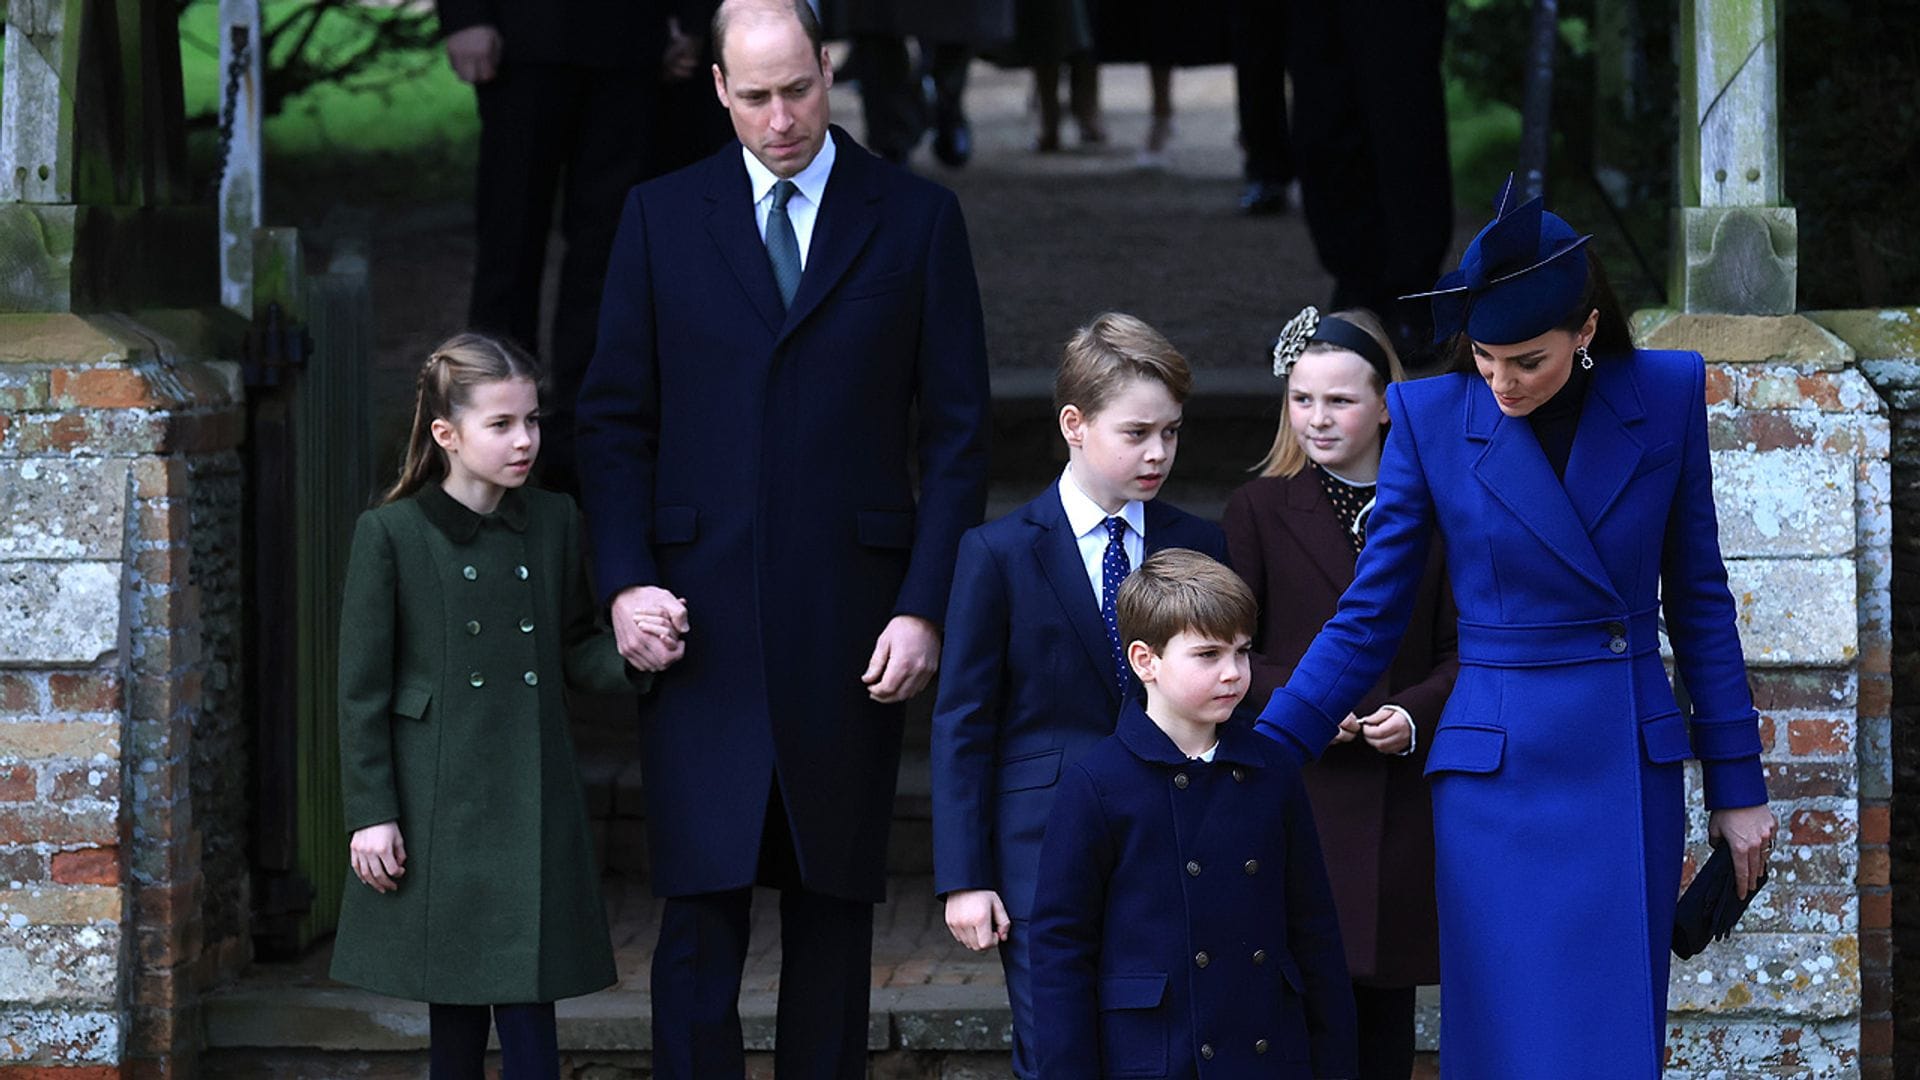 Nuevo revés para los príncipes de Gales: Julia Samuel, madrina de George e íntima de Diana de Gales, sufre un accidente